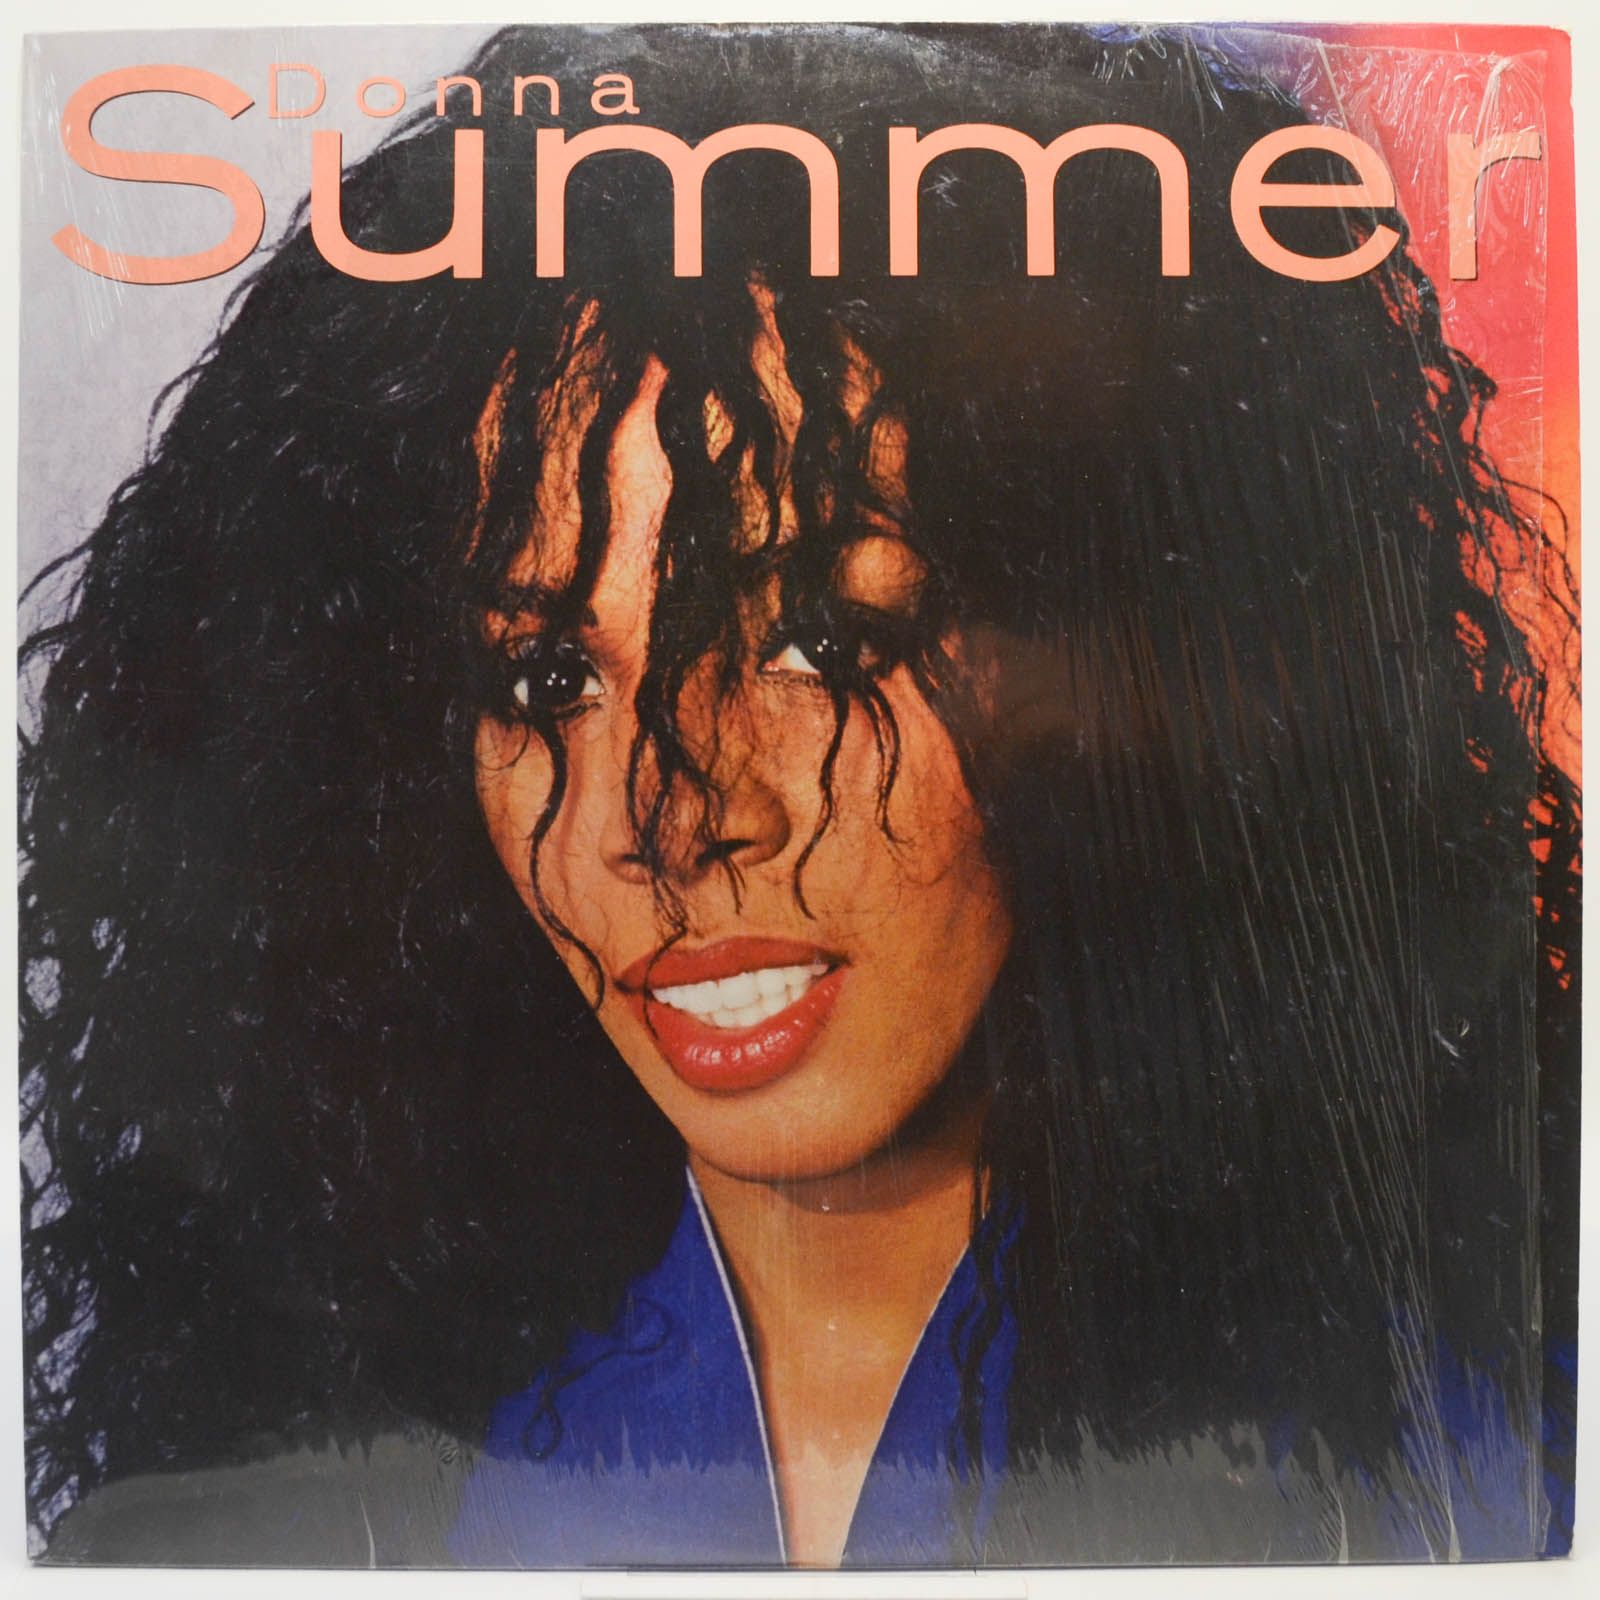 Donna Summer — Donna Summer, 1982